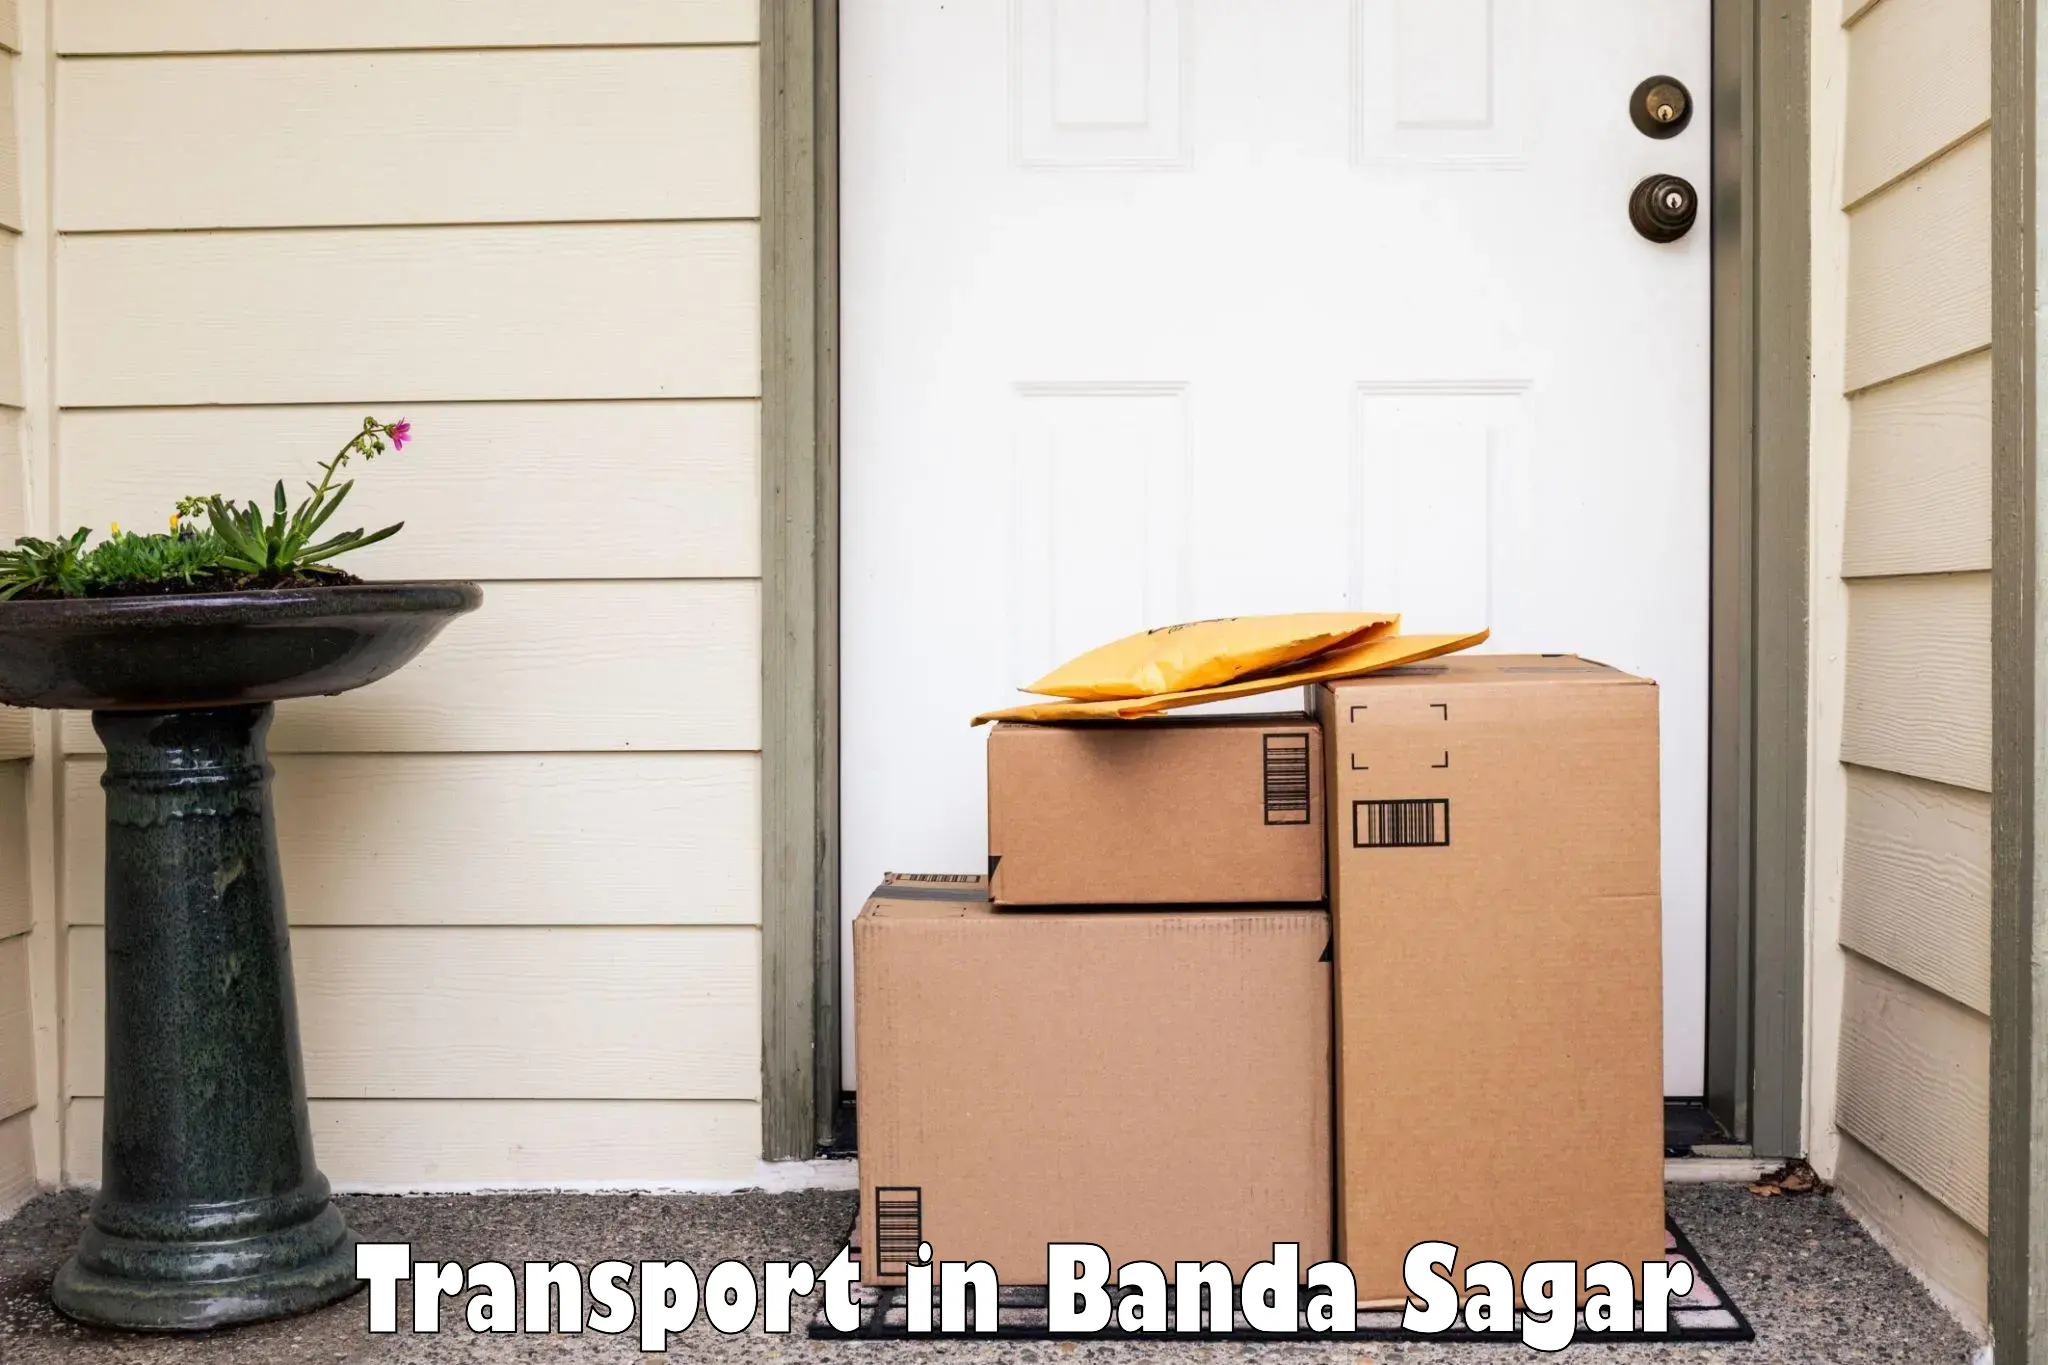 Transport shared services in Banda Sagar